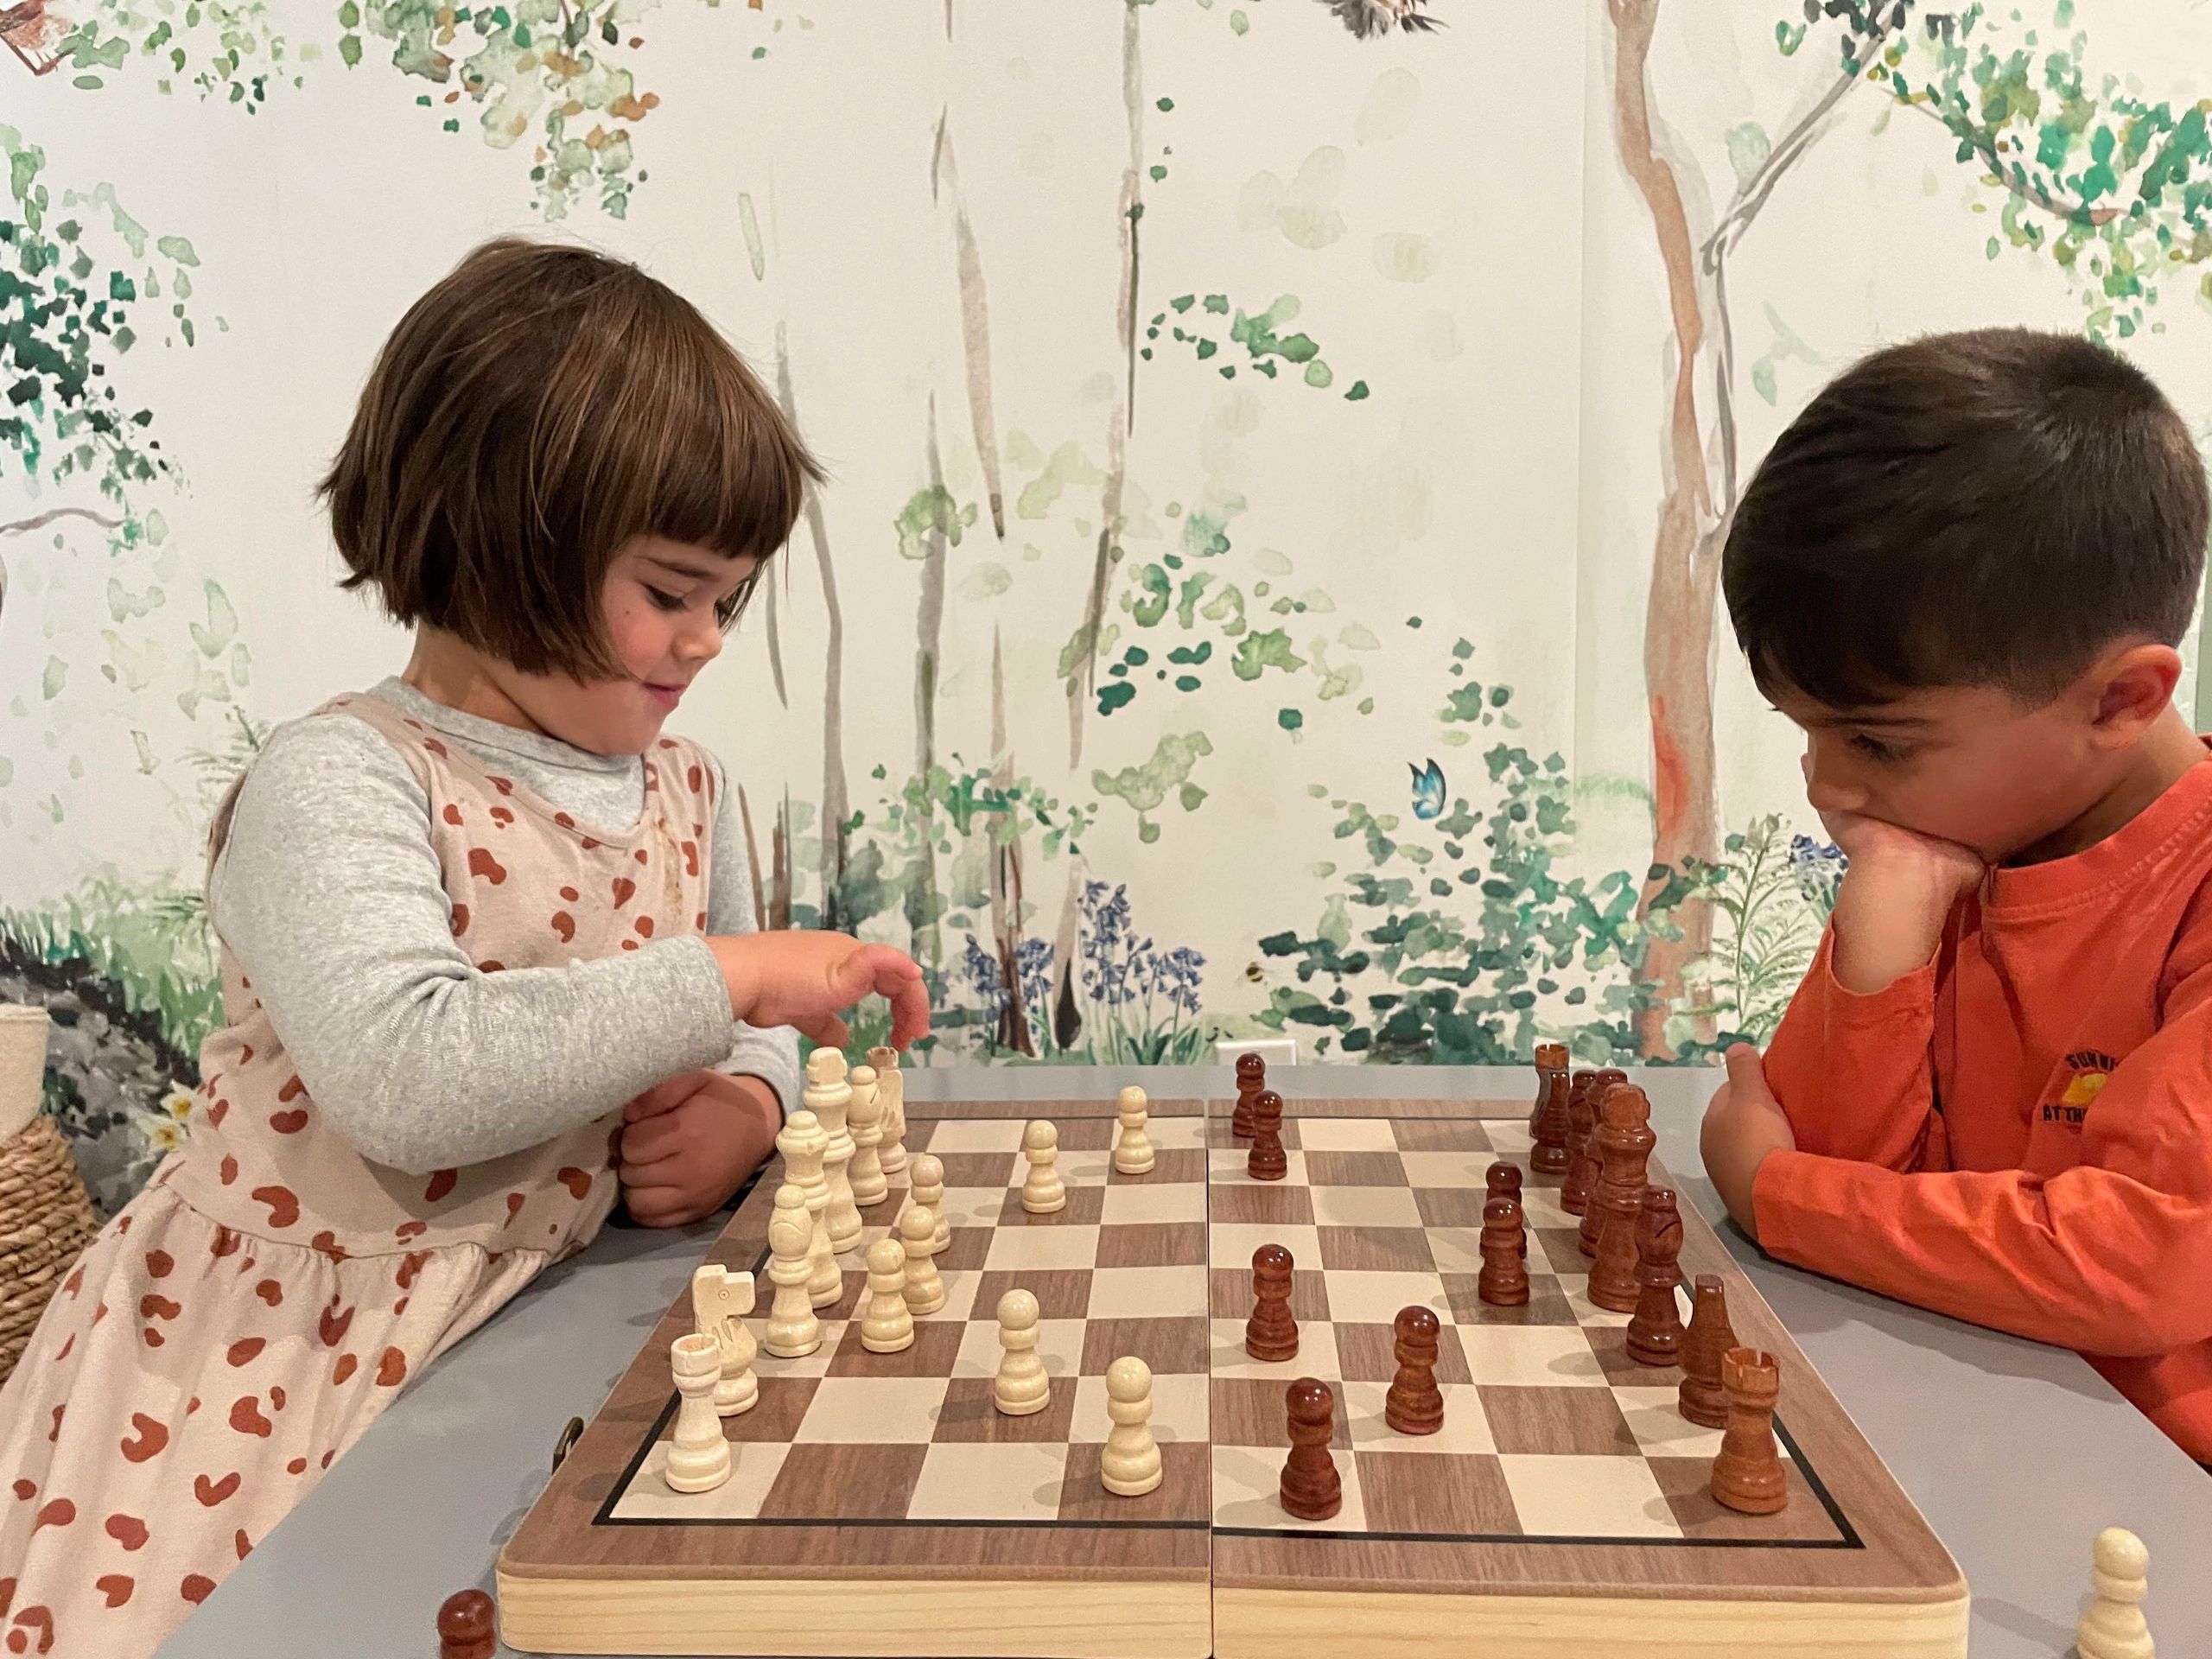 Montessori & Chess - how & why. At 3-6yrs+. - how we montessori